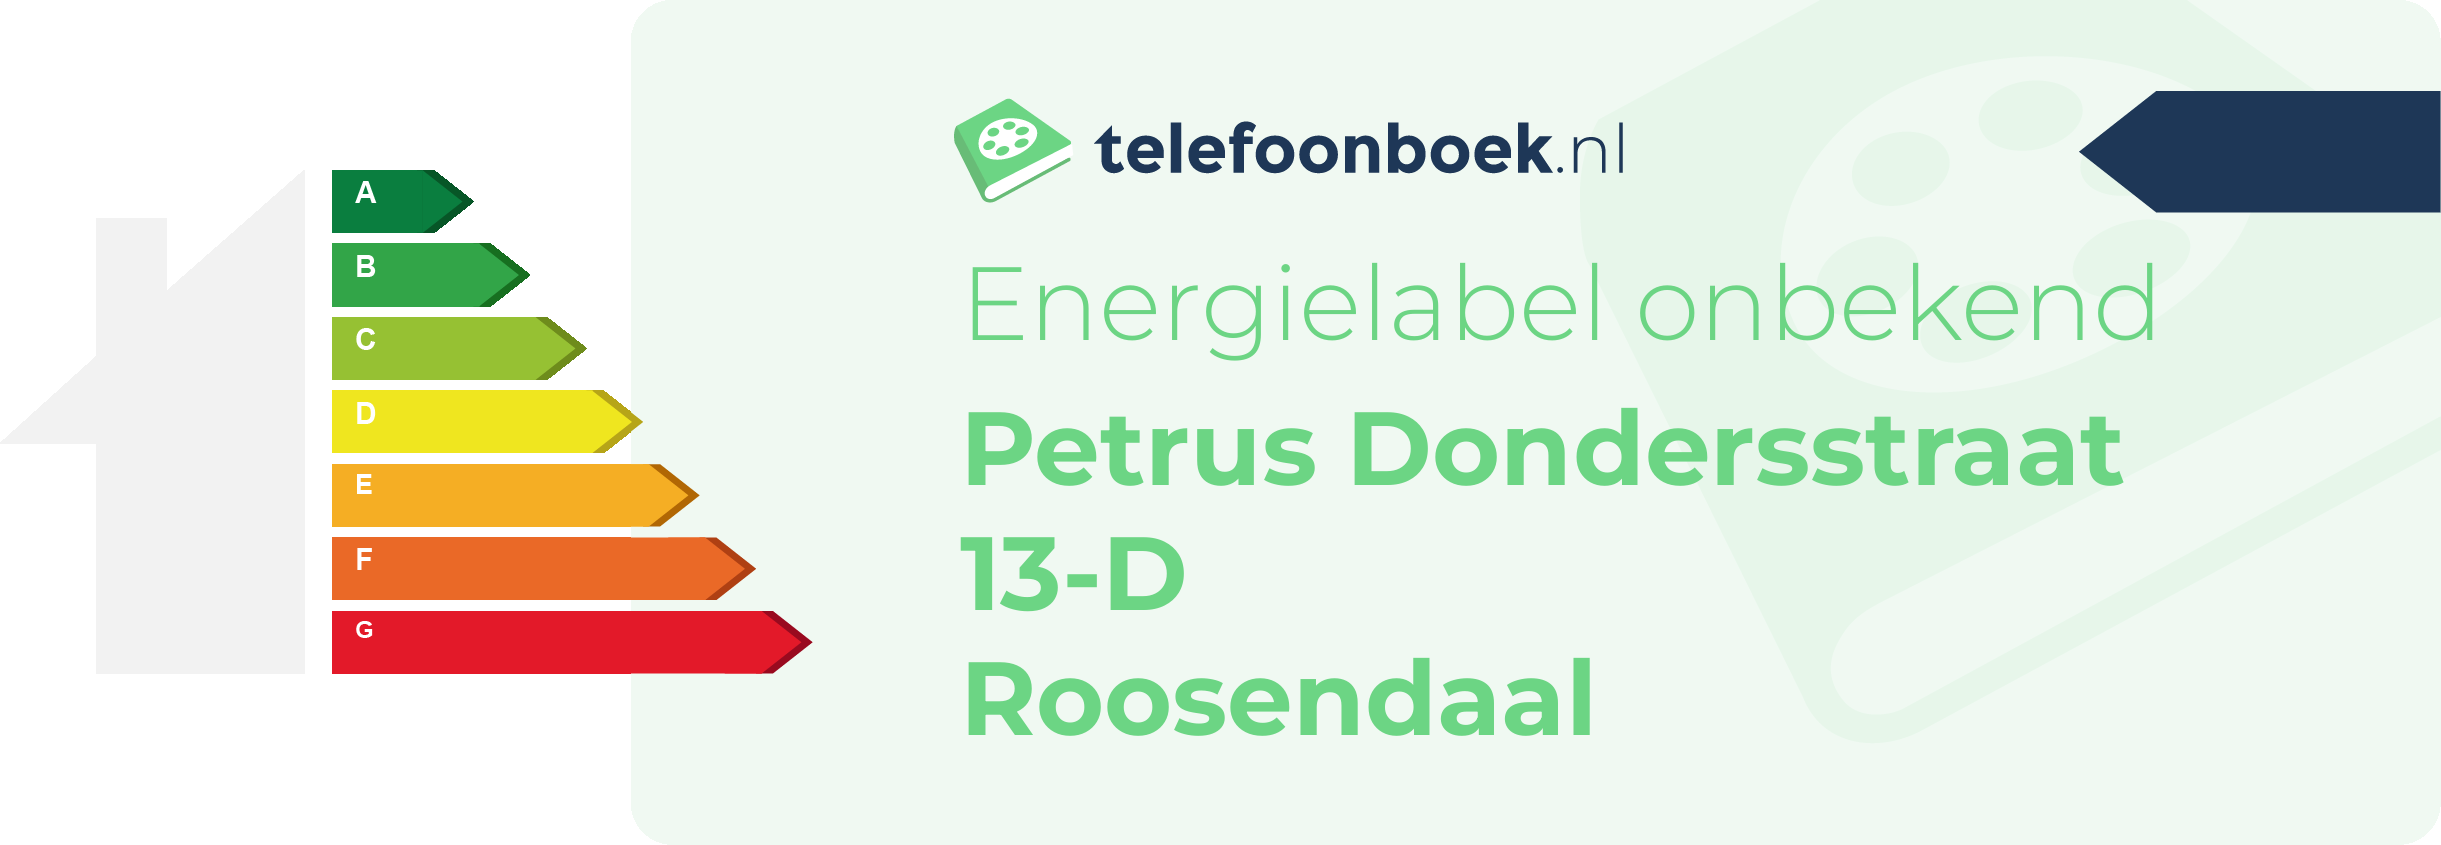 Energielabel Petrus Dondersstraat 13-D Roosendaal